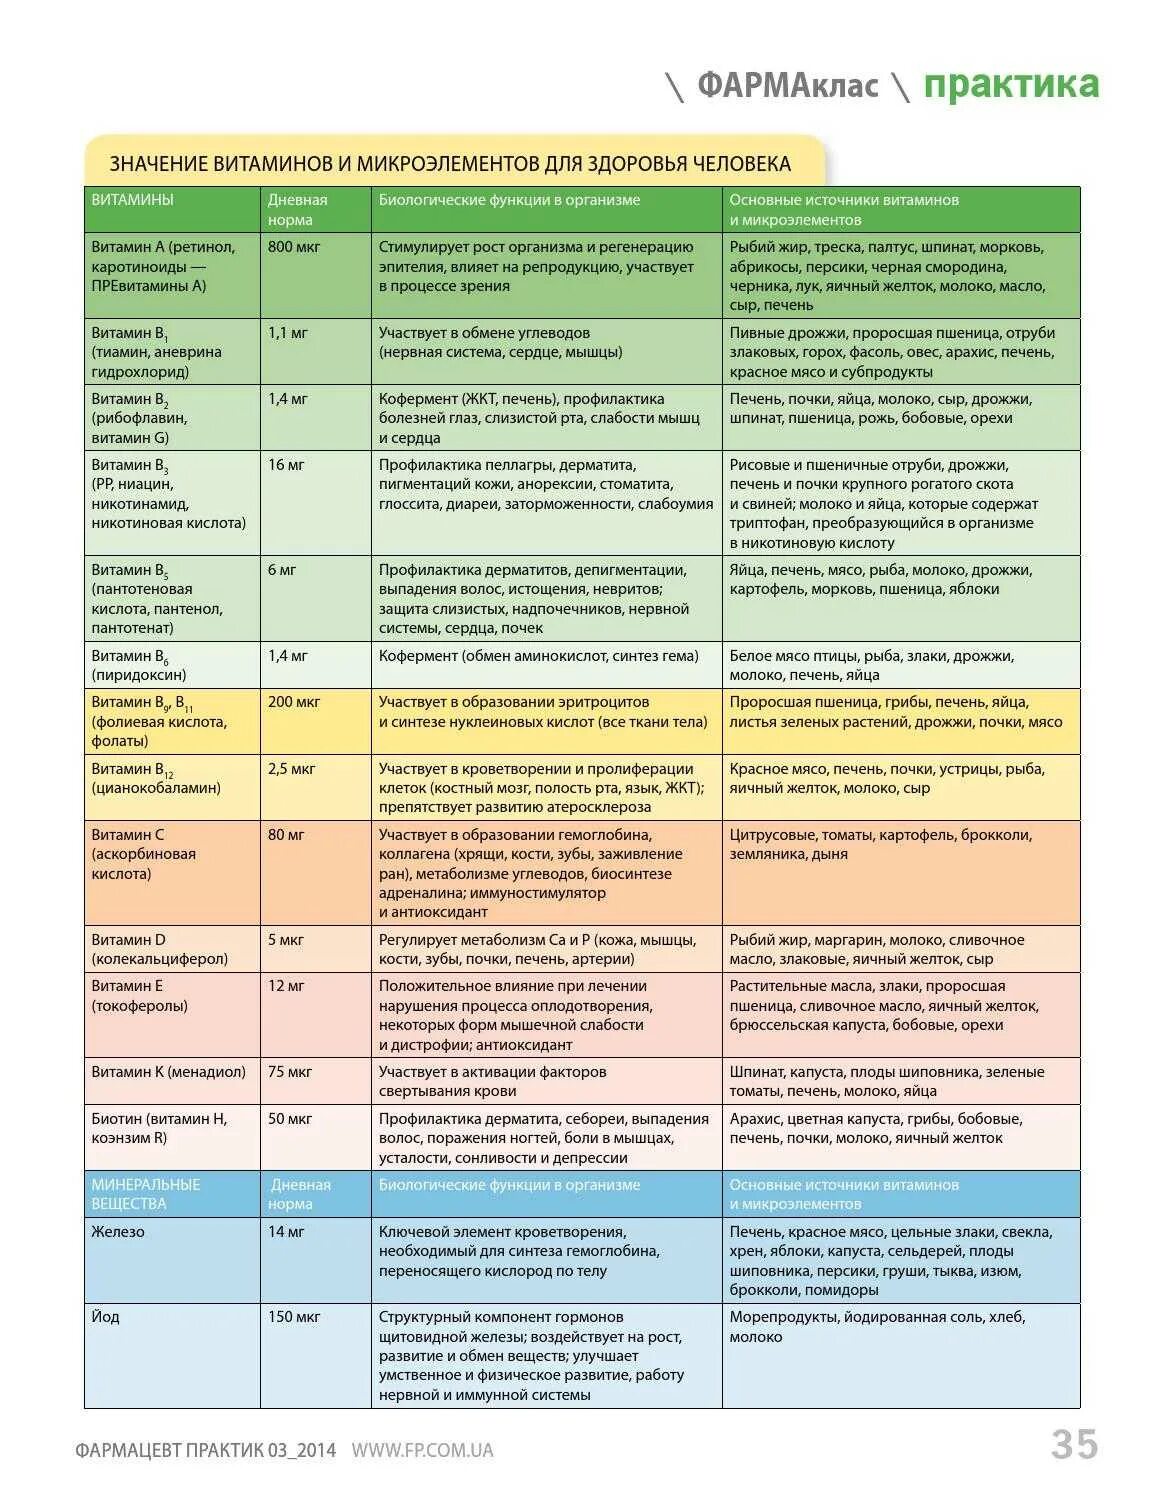 Микроэлементы витамины список таблица. Название витаминов и их роль в организме таблица. Витамины в организме человека таблица. Таблицва витамин и минералов.